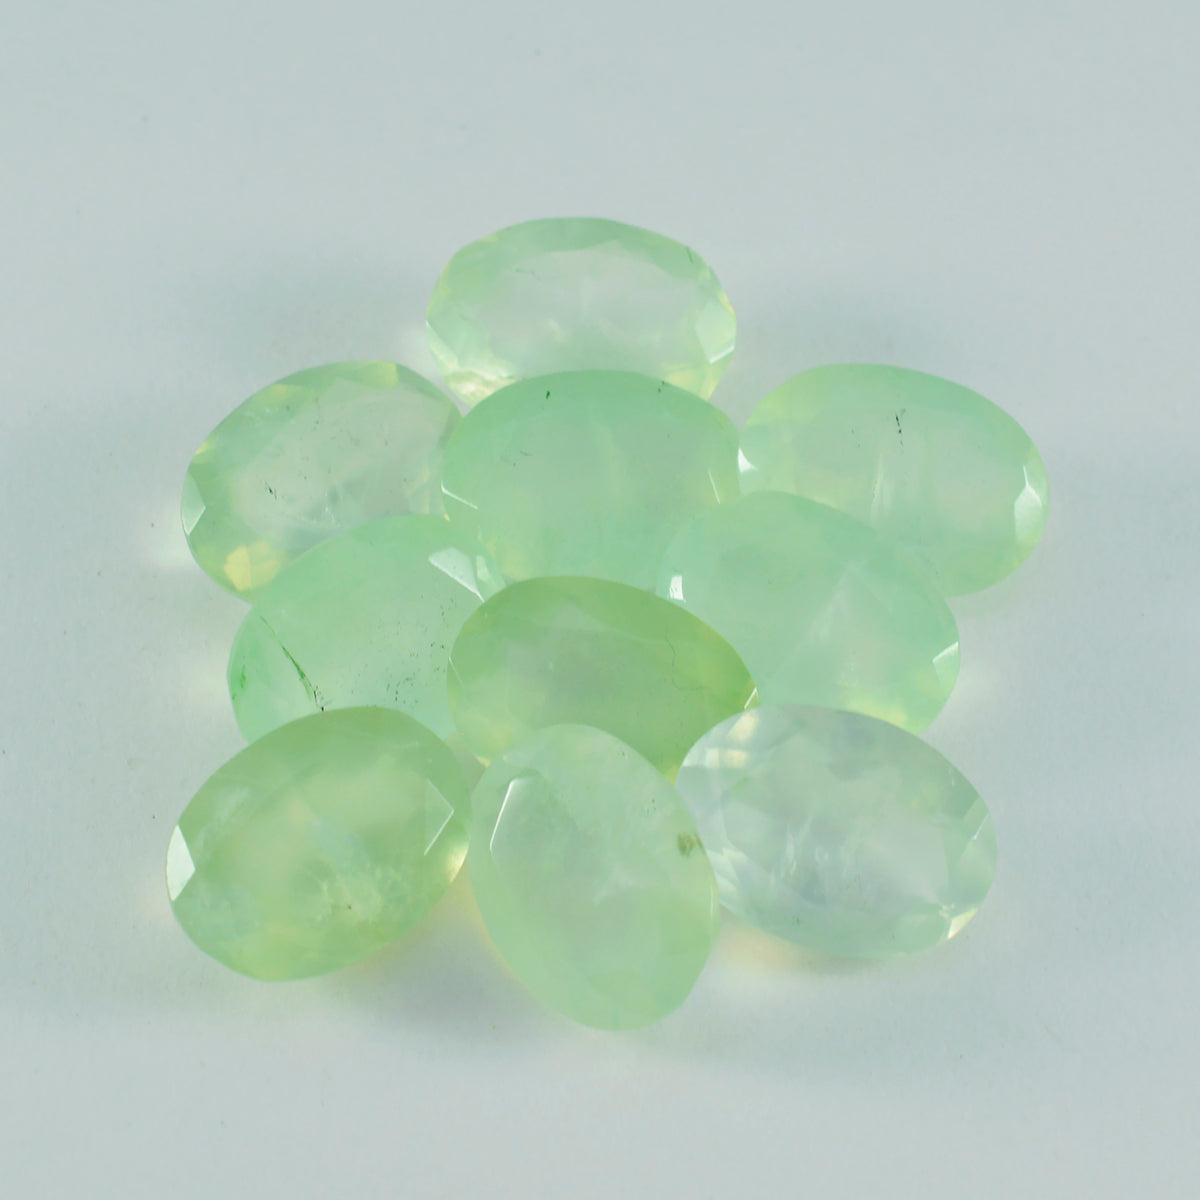 riyogems 1шт зеленый пренит ограненный 8х10 мм овальная форма красивый качественный рассыпной камень